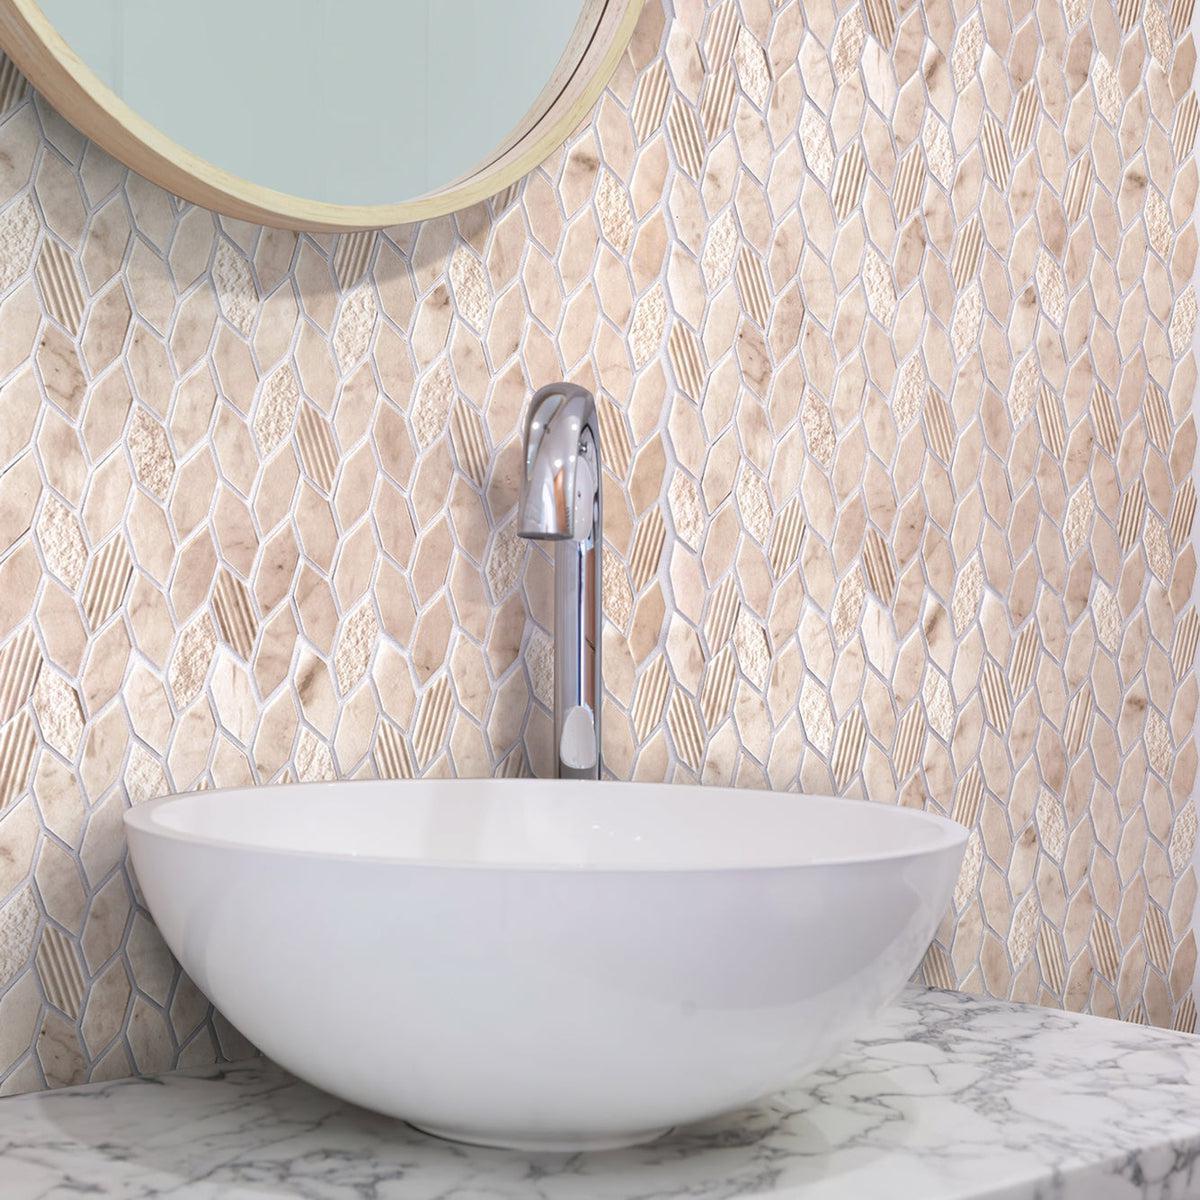 Textured Crema Marfil Leaf Marble Mosaic Tile bathroom backsplash